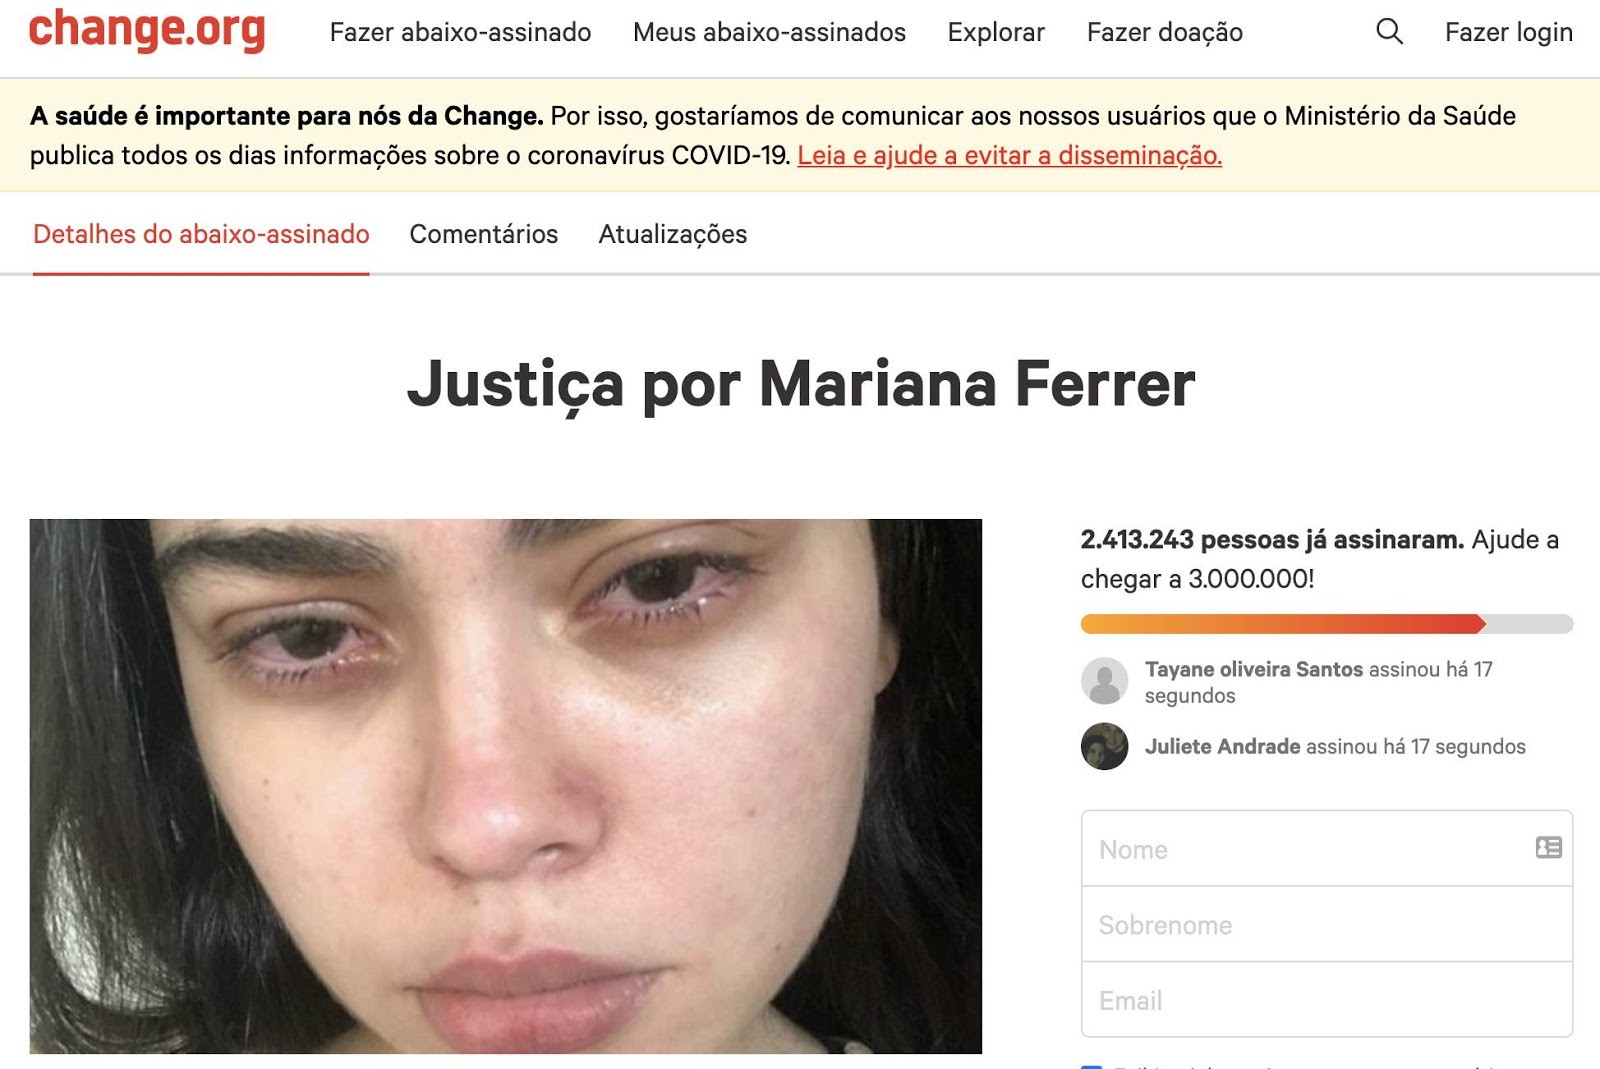 Petição por justiça para Mariana Ferrer ganha quase 1 milhão de assinaturas após sentença (Foto: Reprodução/Change.org)